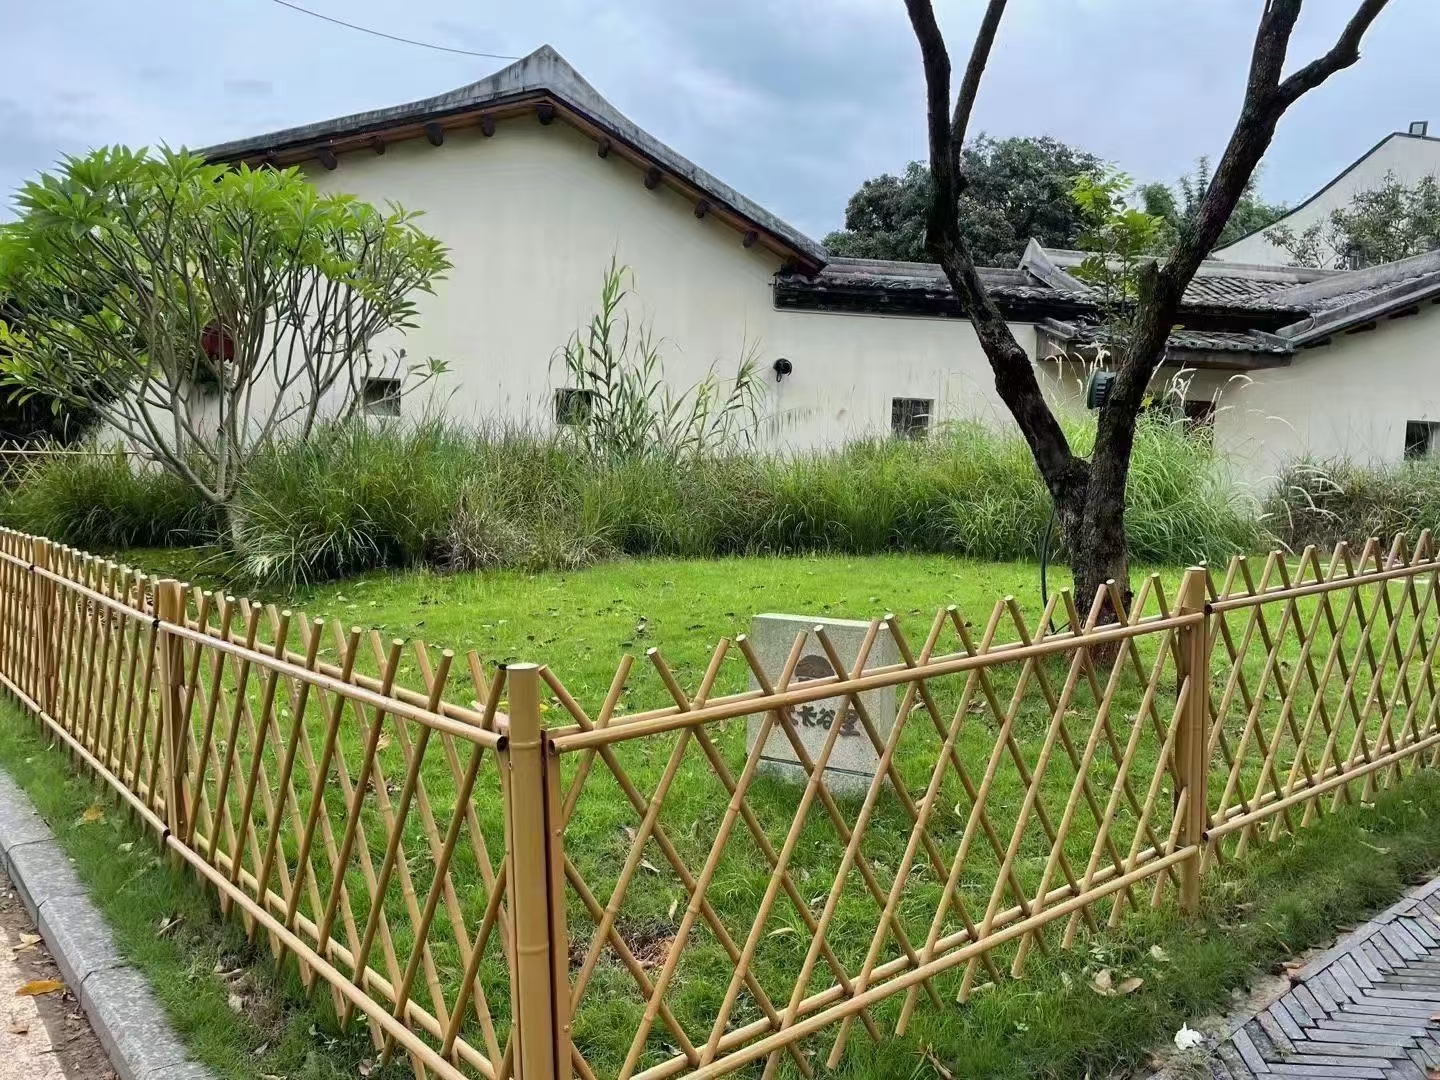 衢州 竹篱笆 竹片栏杆葫芦岛连山绿化护栏仿竹护栏